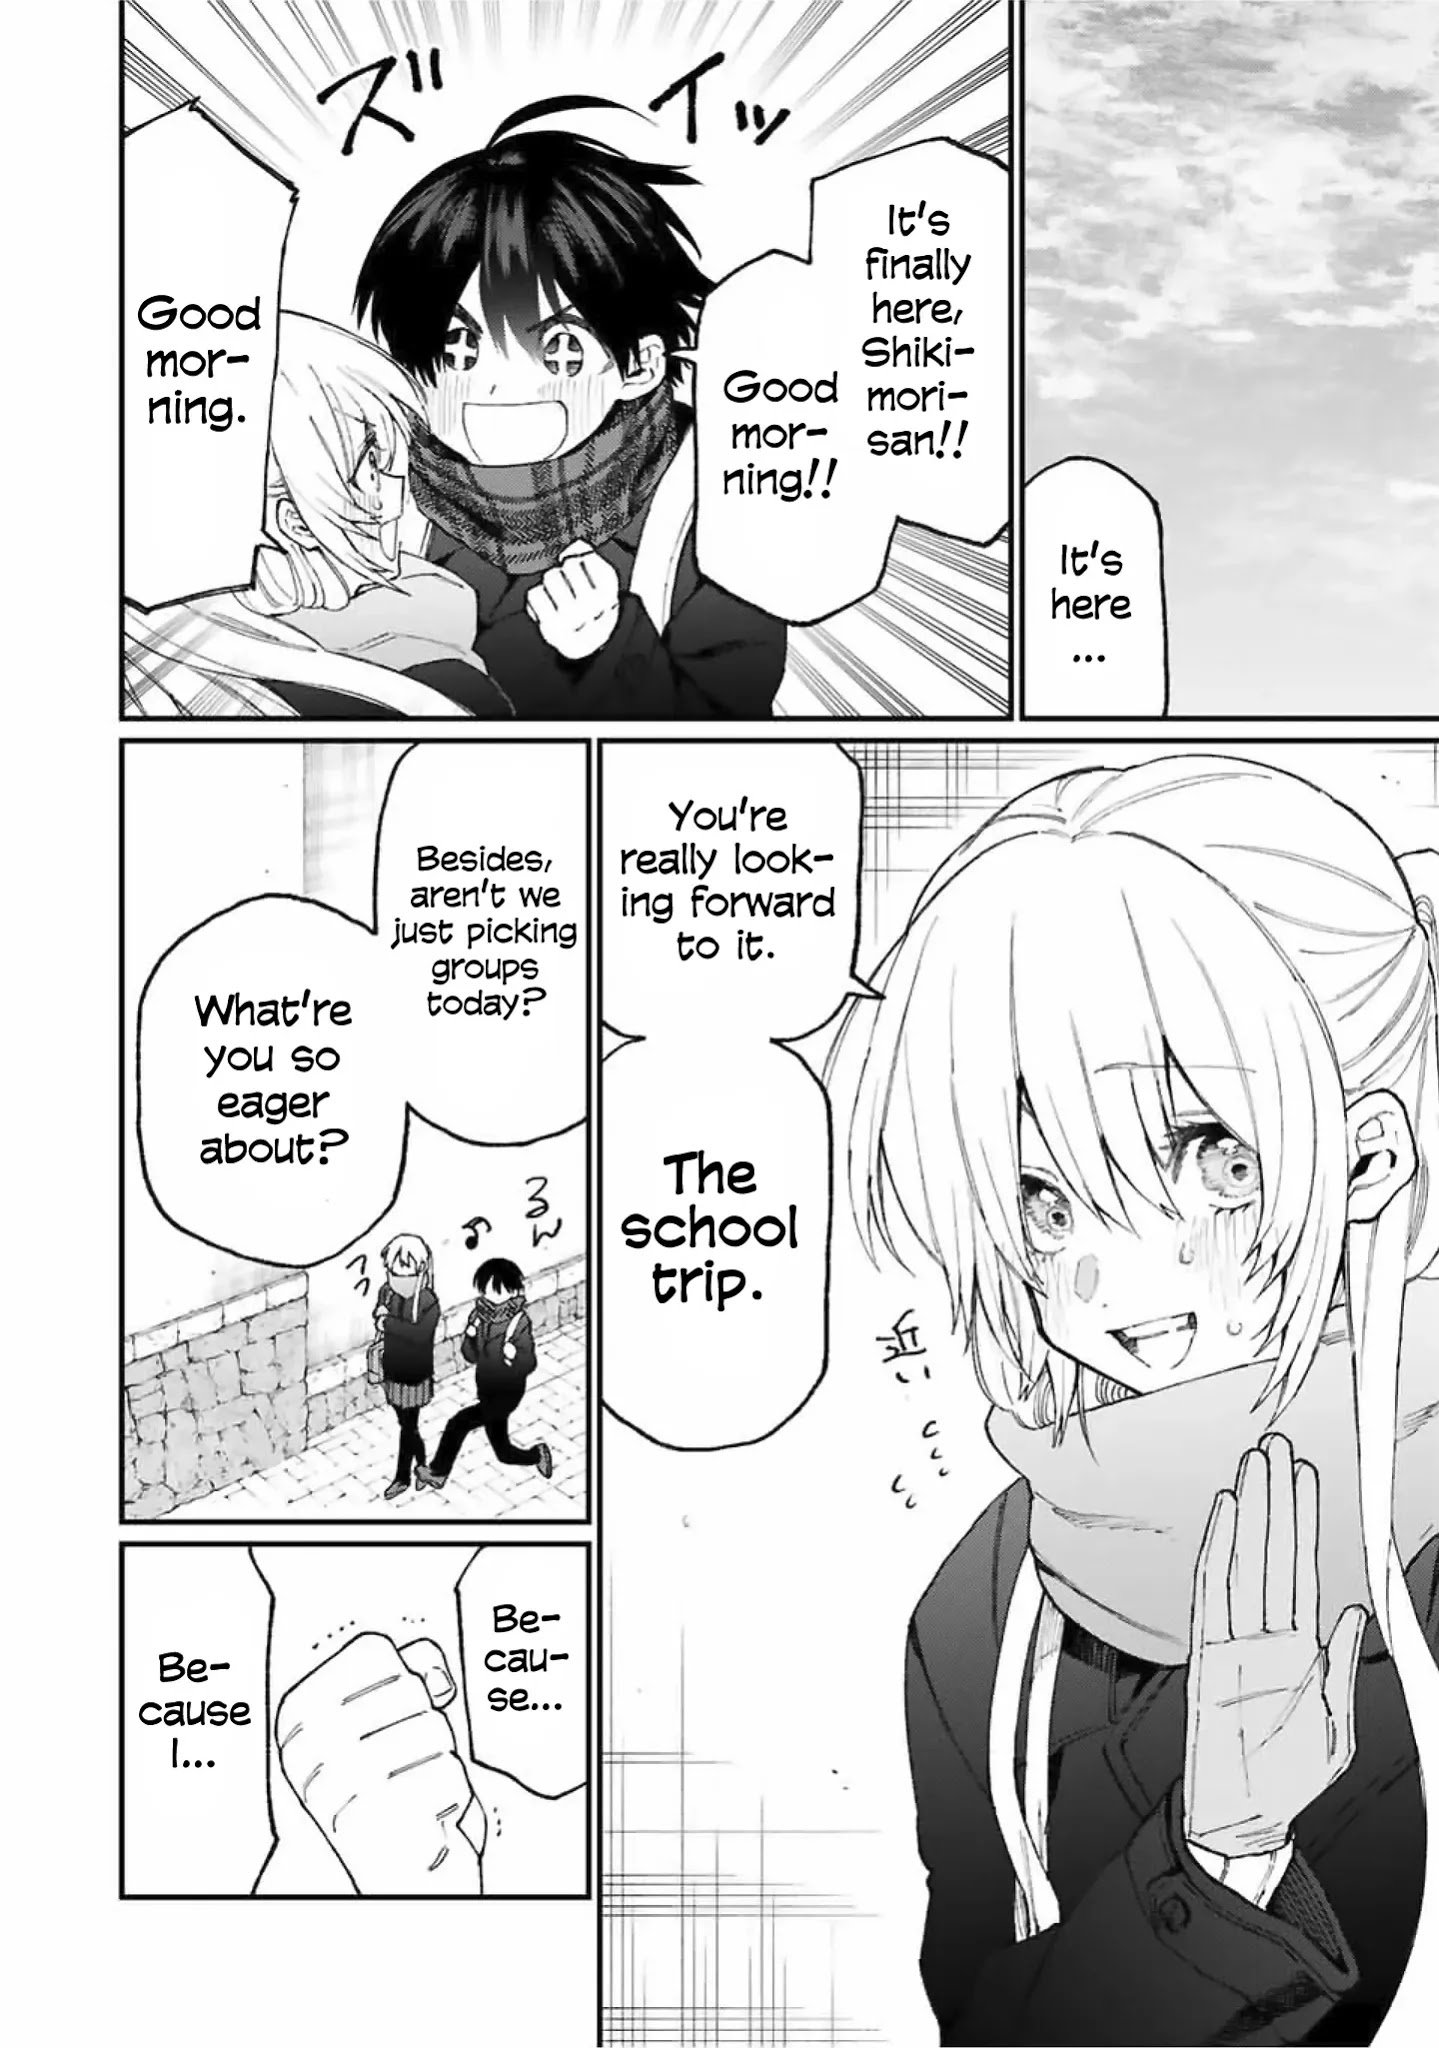 Shikimori's Not Just A Cutie - chapter 83 - #3